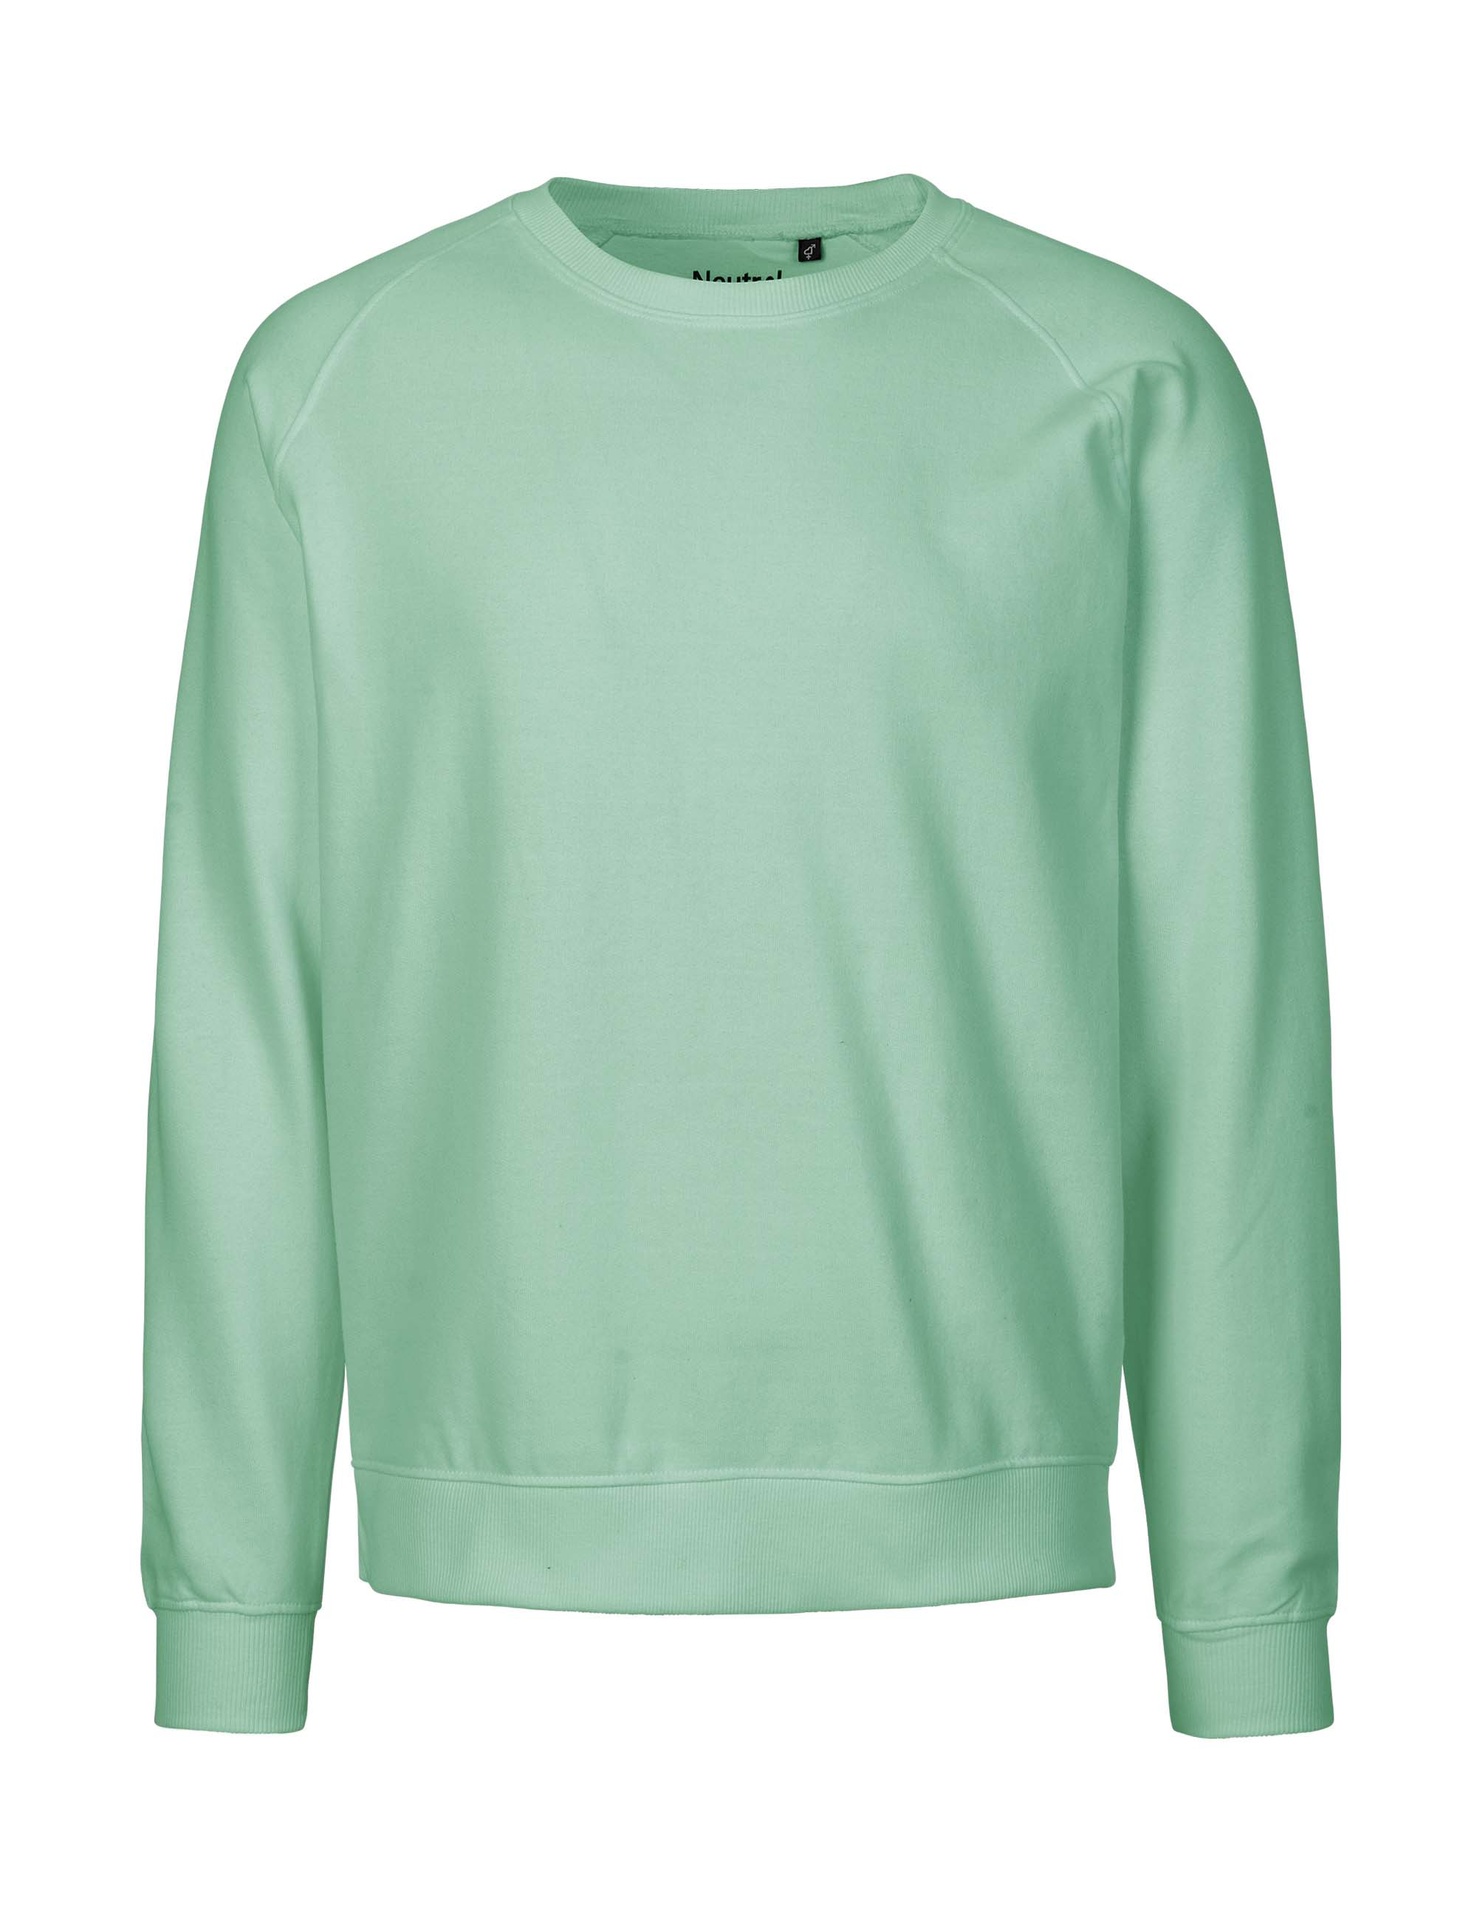 [PR/02831] Unisex Sweatshirt (Dusty Mint 40, 5XL)